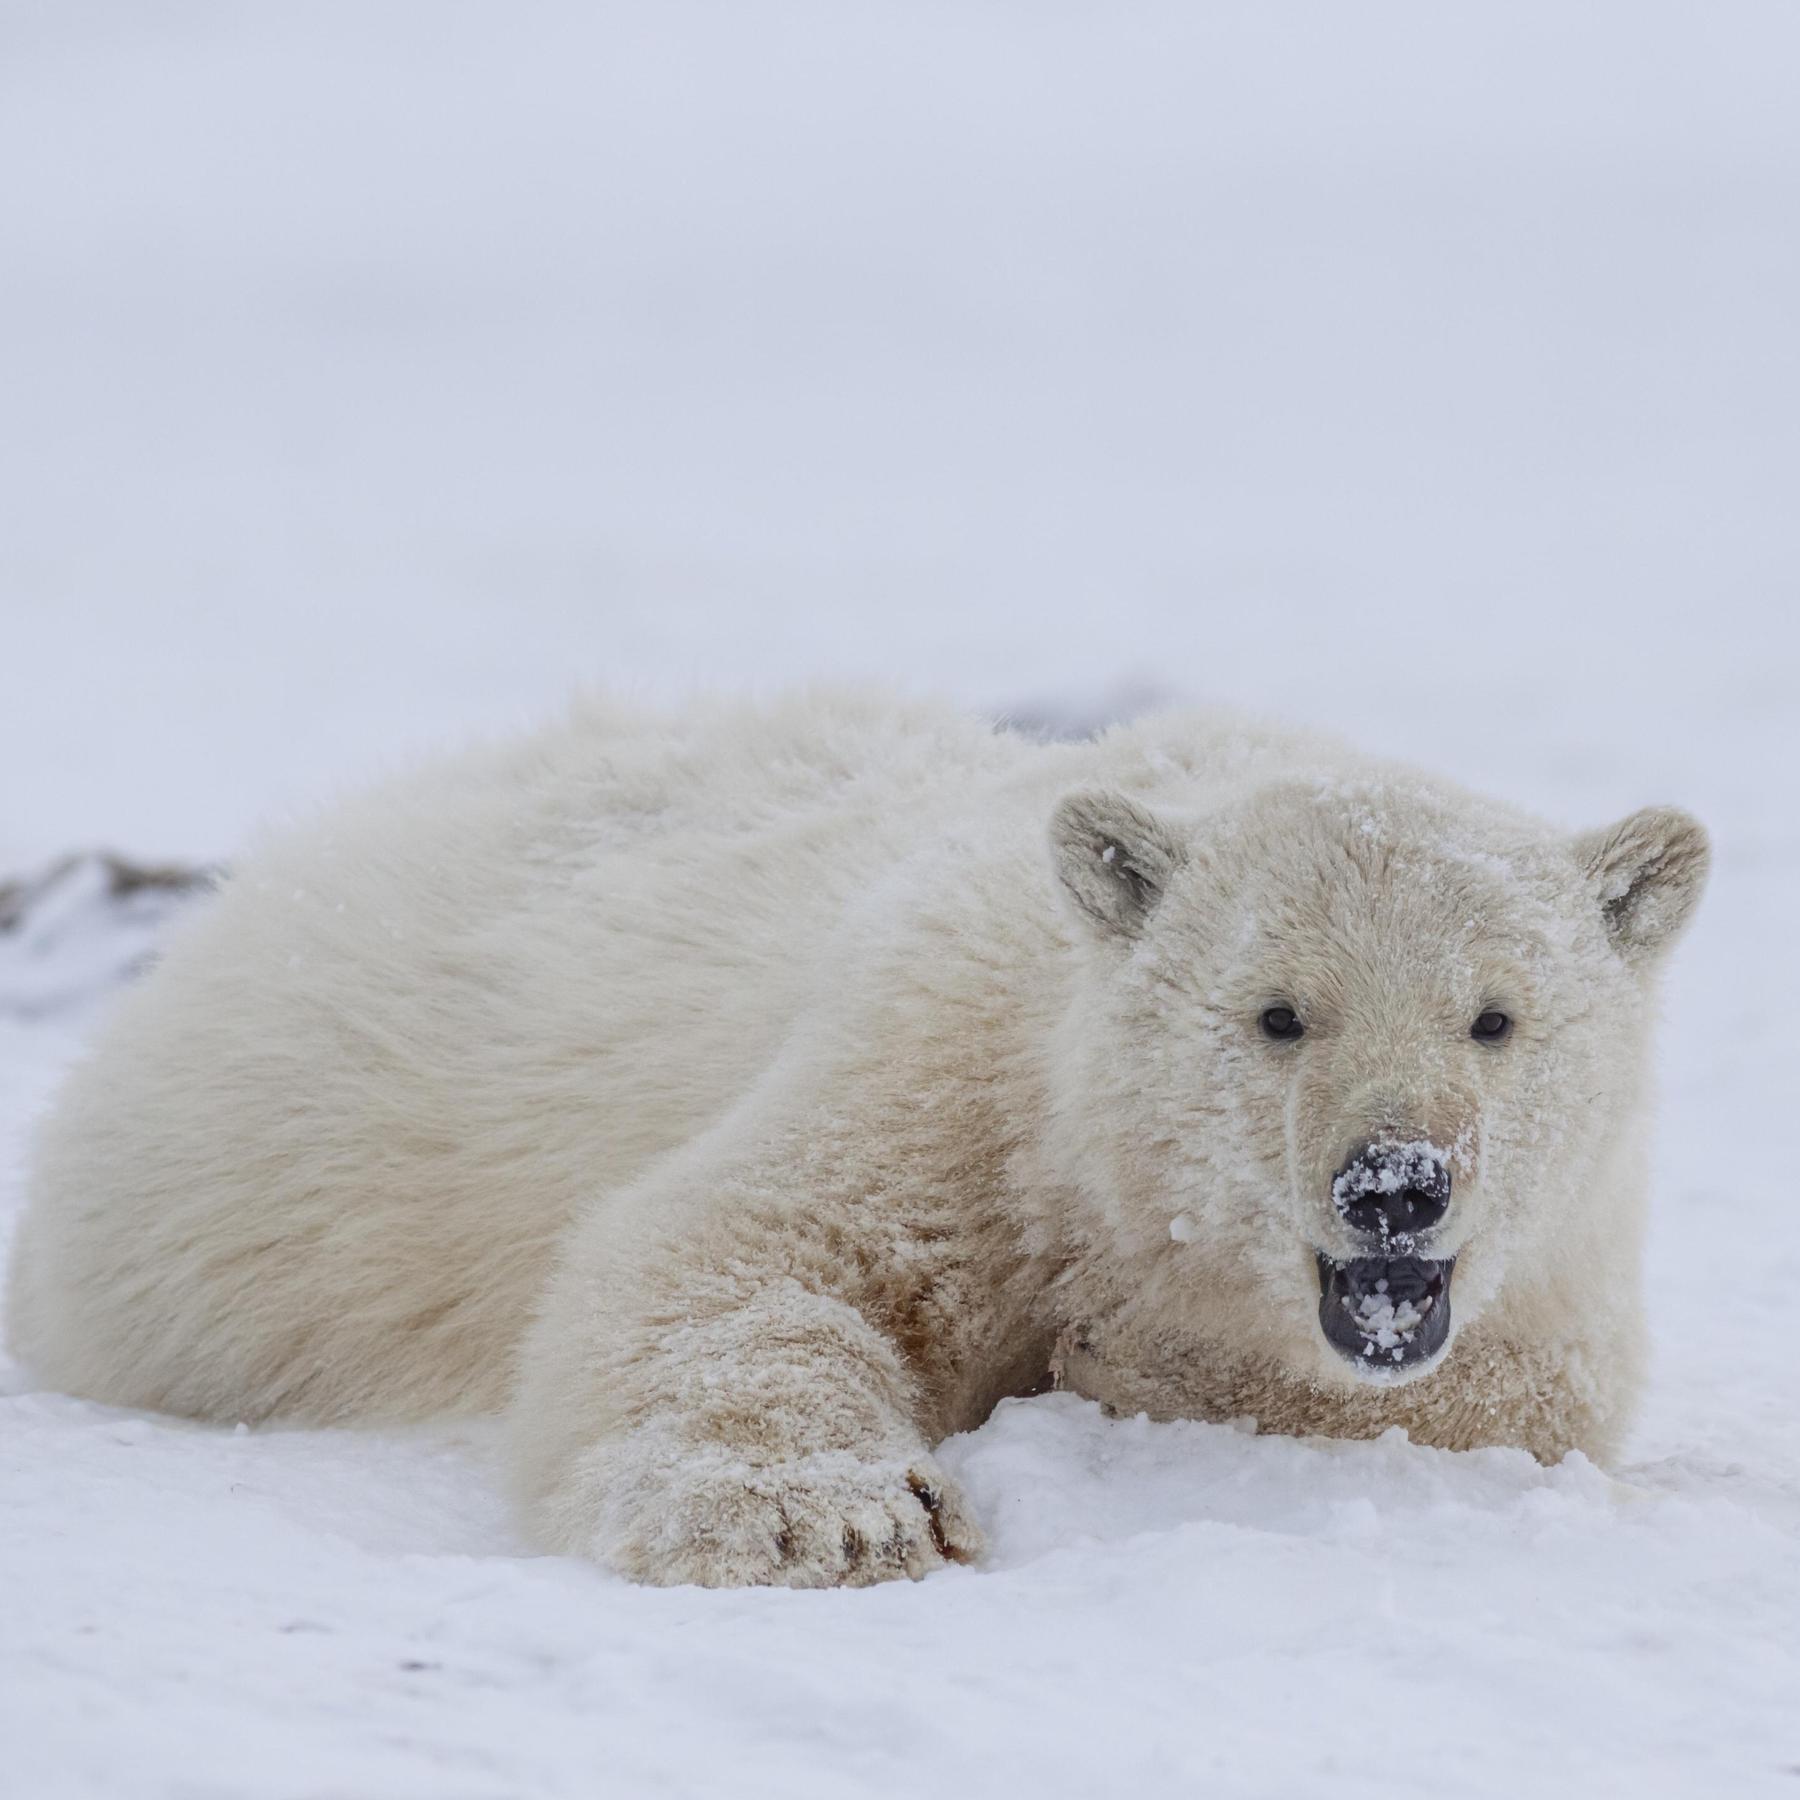 Sybille Klenzendorf, Eisbär-Expertin: Haut des Eisbären ist eigentlich schwarz